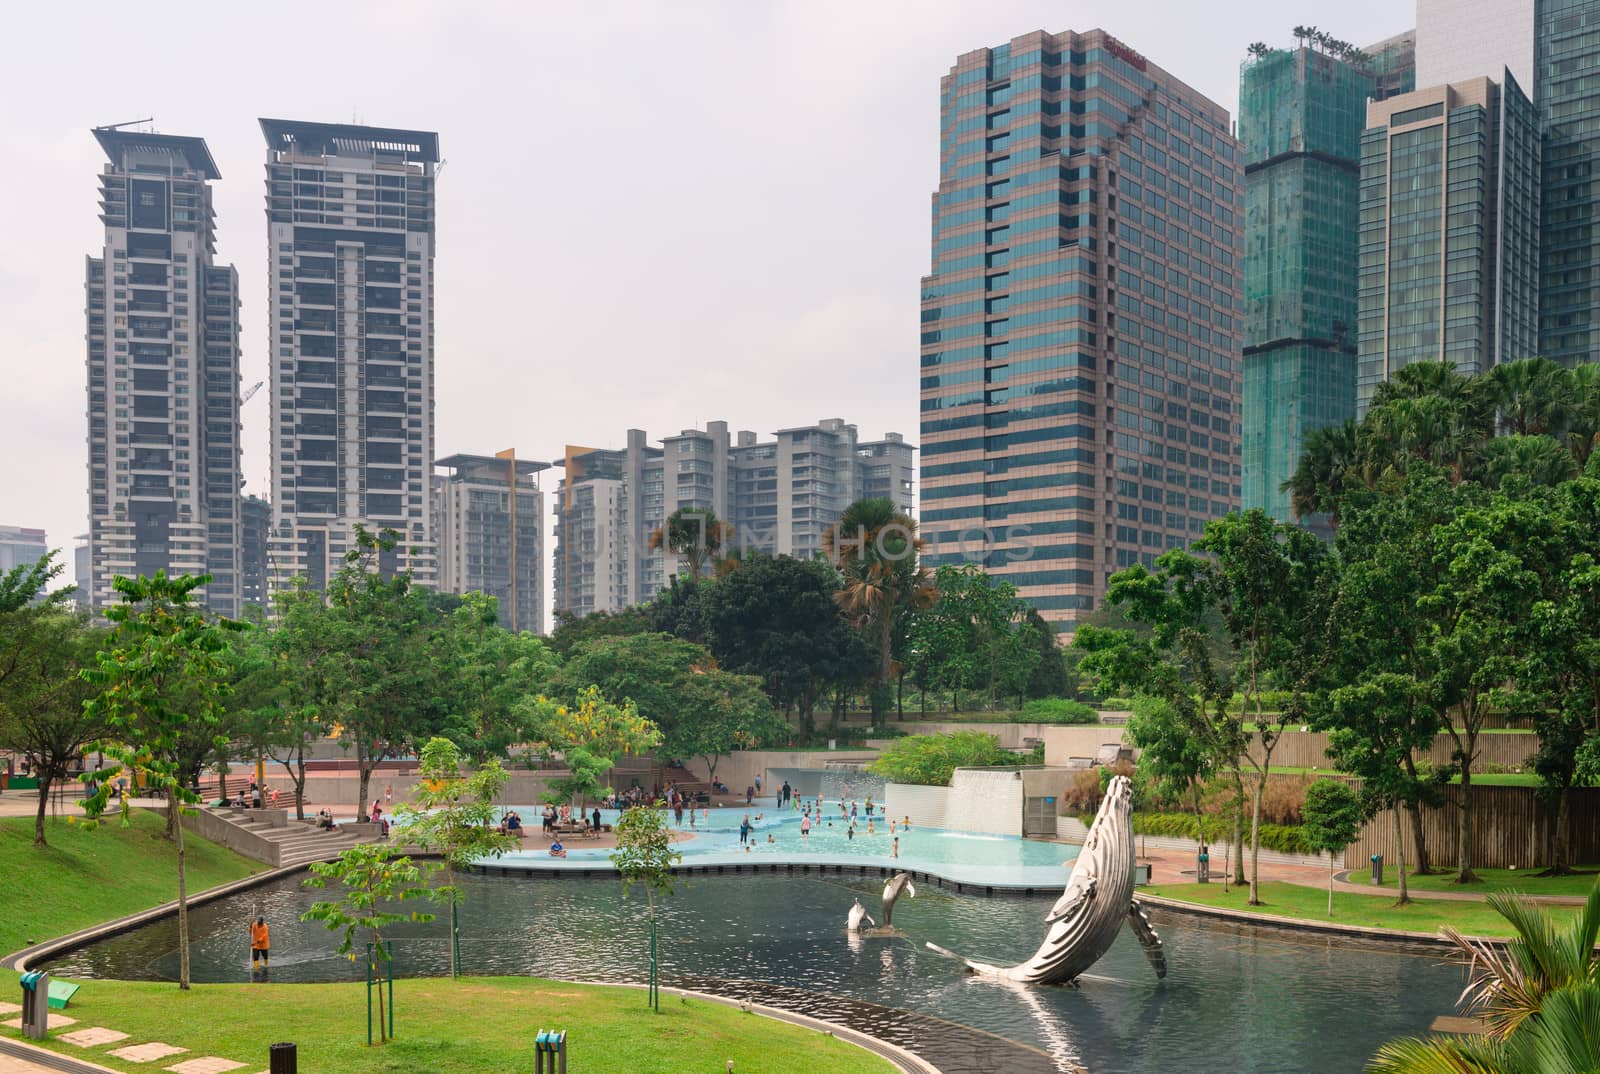 KLCC Park in Kuala Lumpur, Malaysia by iryna_rasko